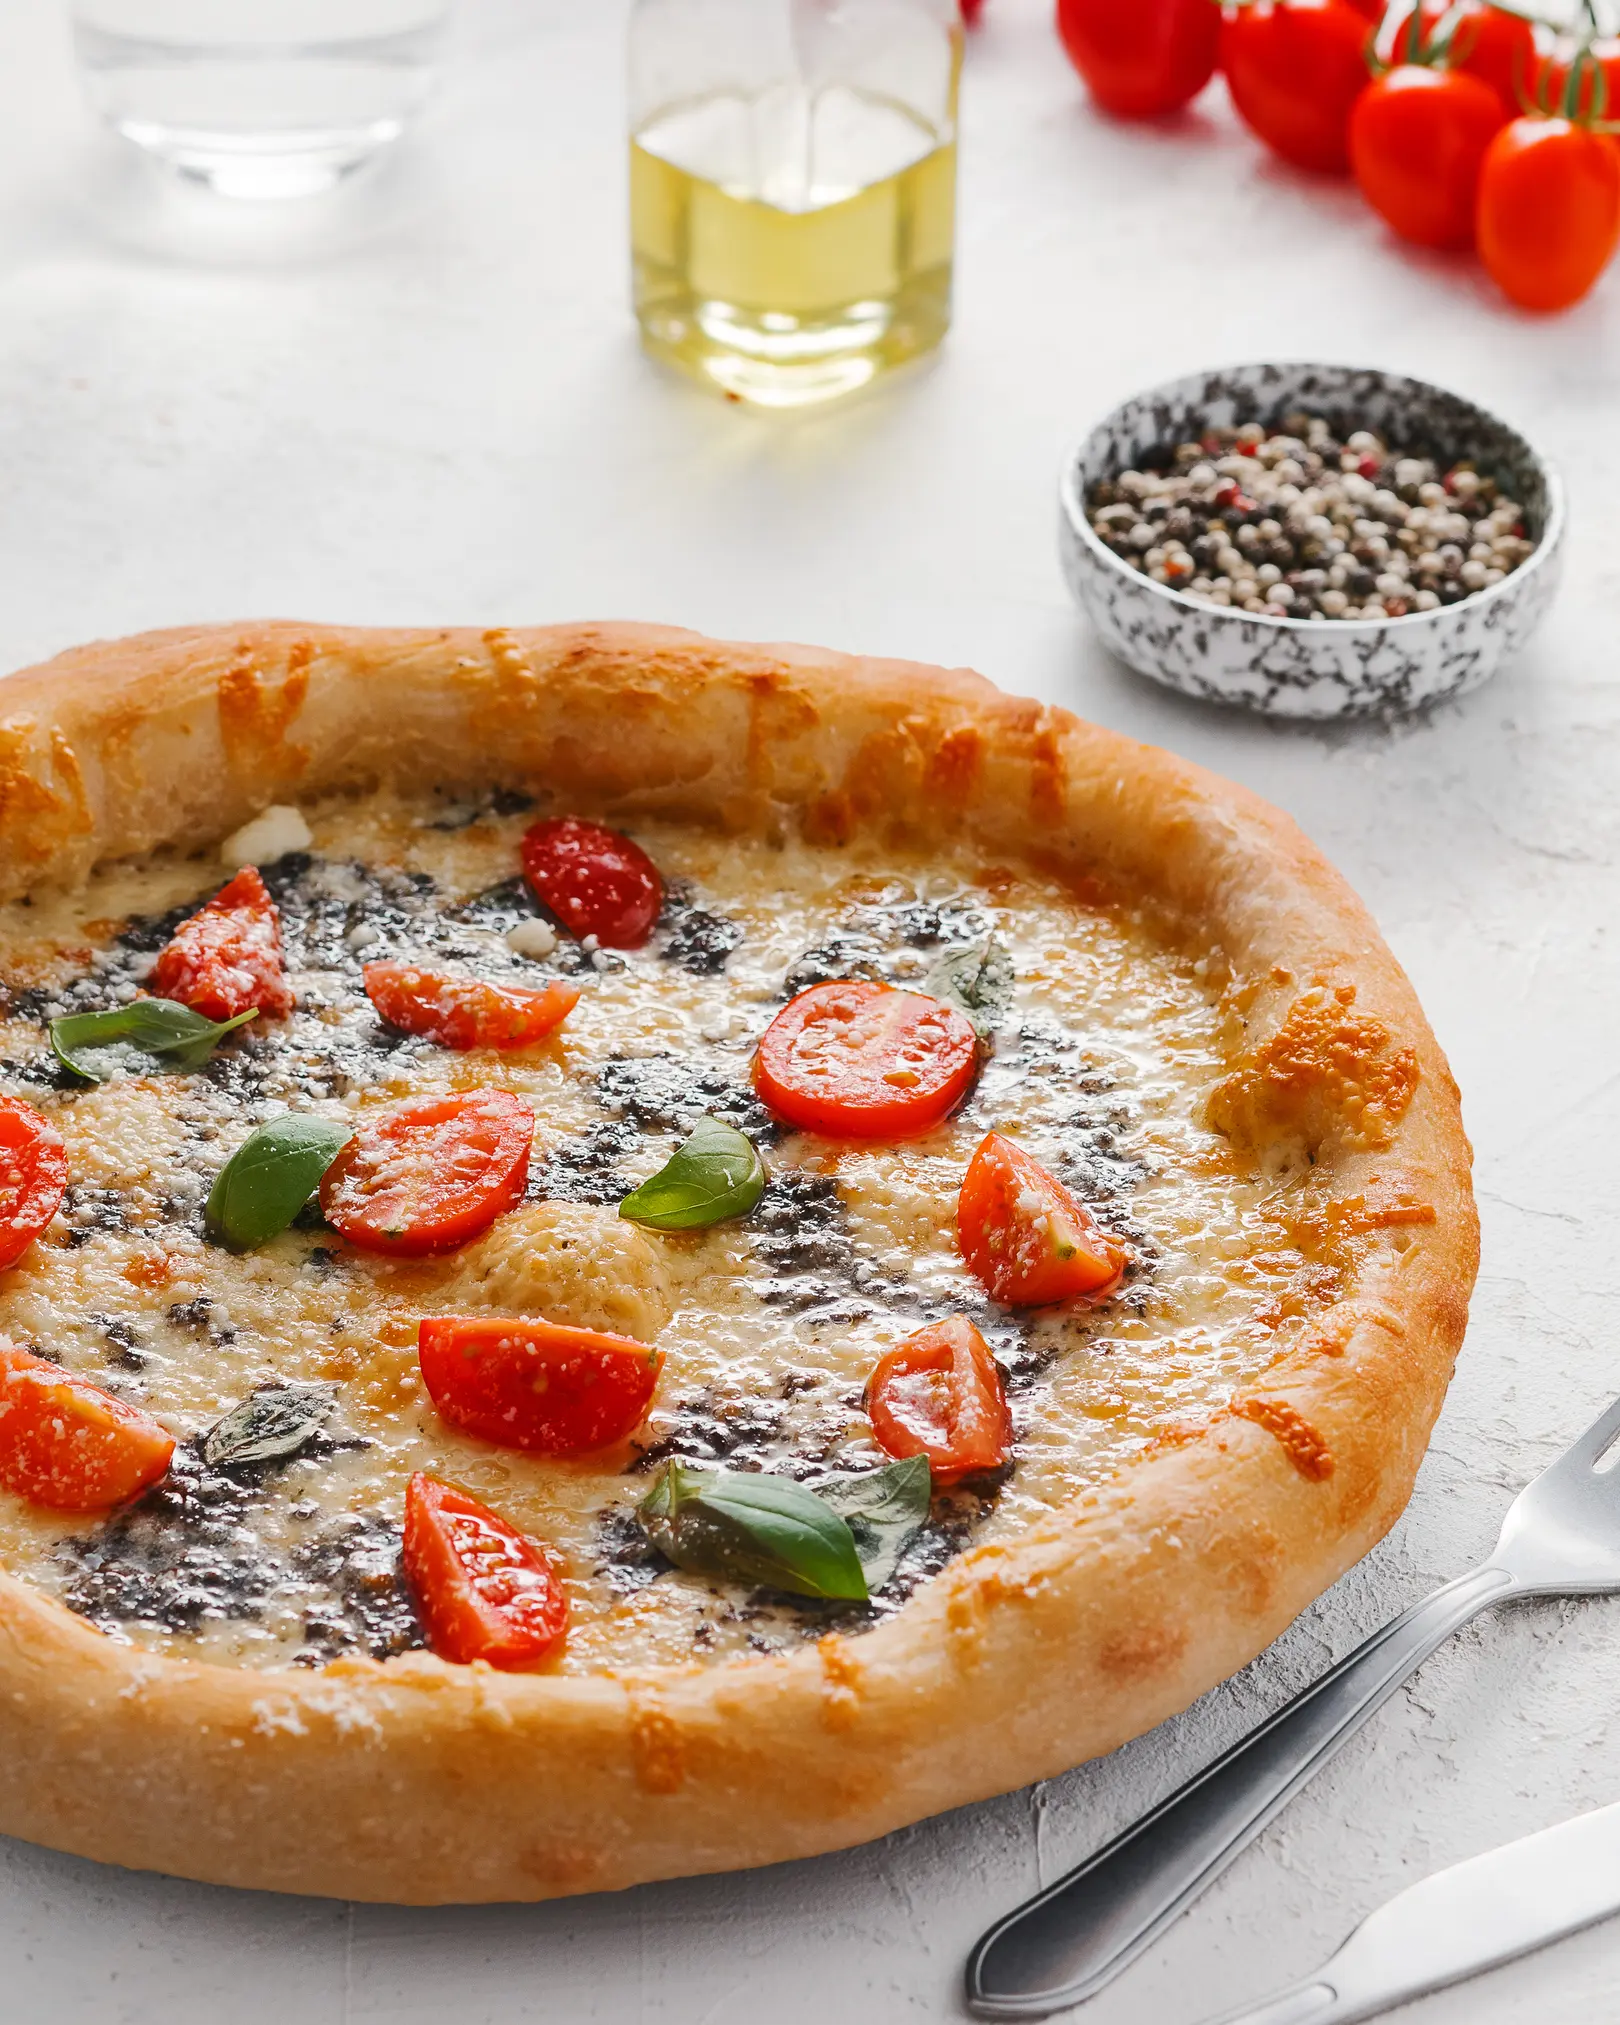 Пица на масата. На масата има пица с домати и сирен сос. Тя има красива хрупкава страна. Тя блести с масло в лъчите на светлината.